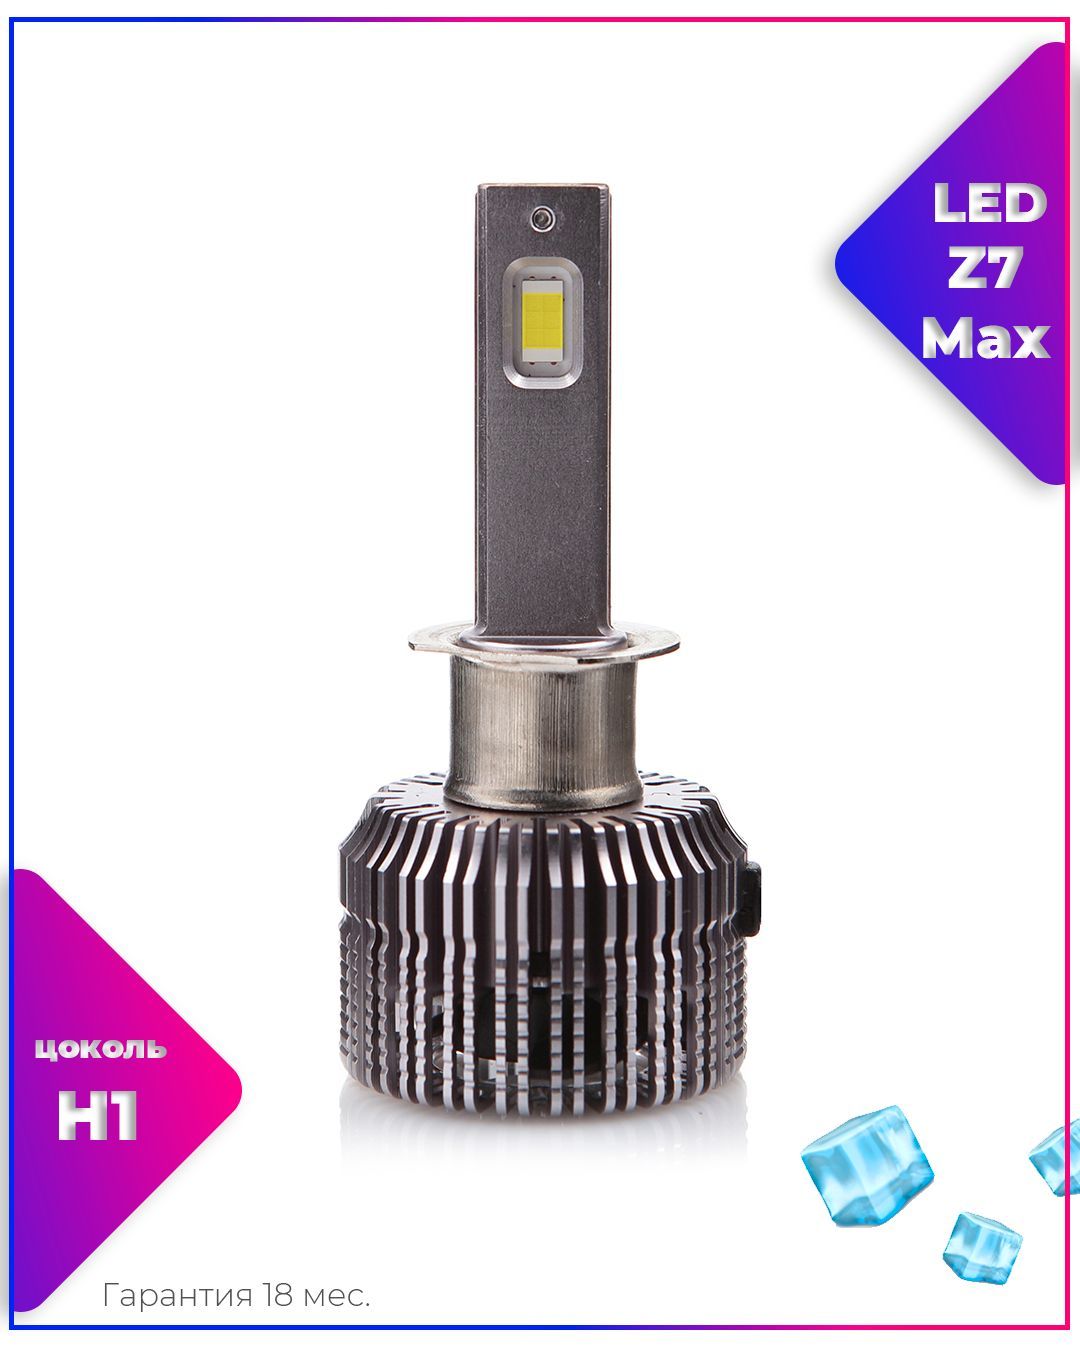 LEDOVЫЙ/LED лампа Z7 Max с тройной системой охлаждения/90w/5000k/комплект,  для автомобильных фар/ H1